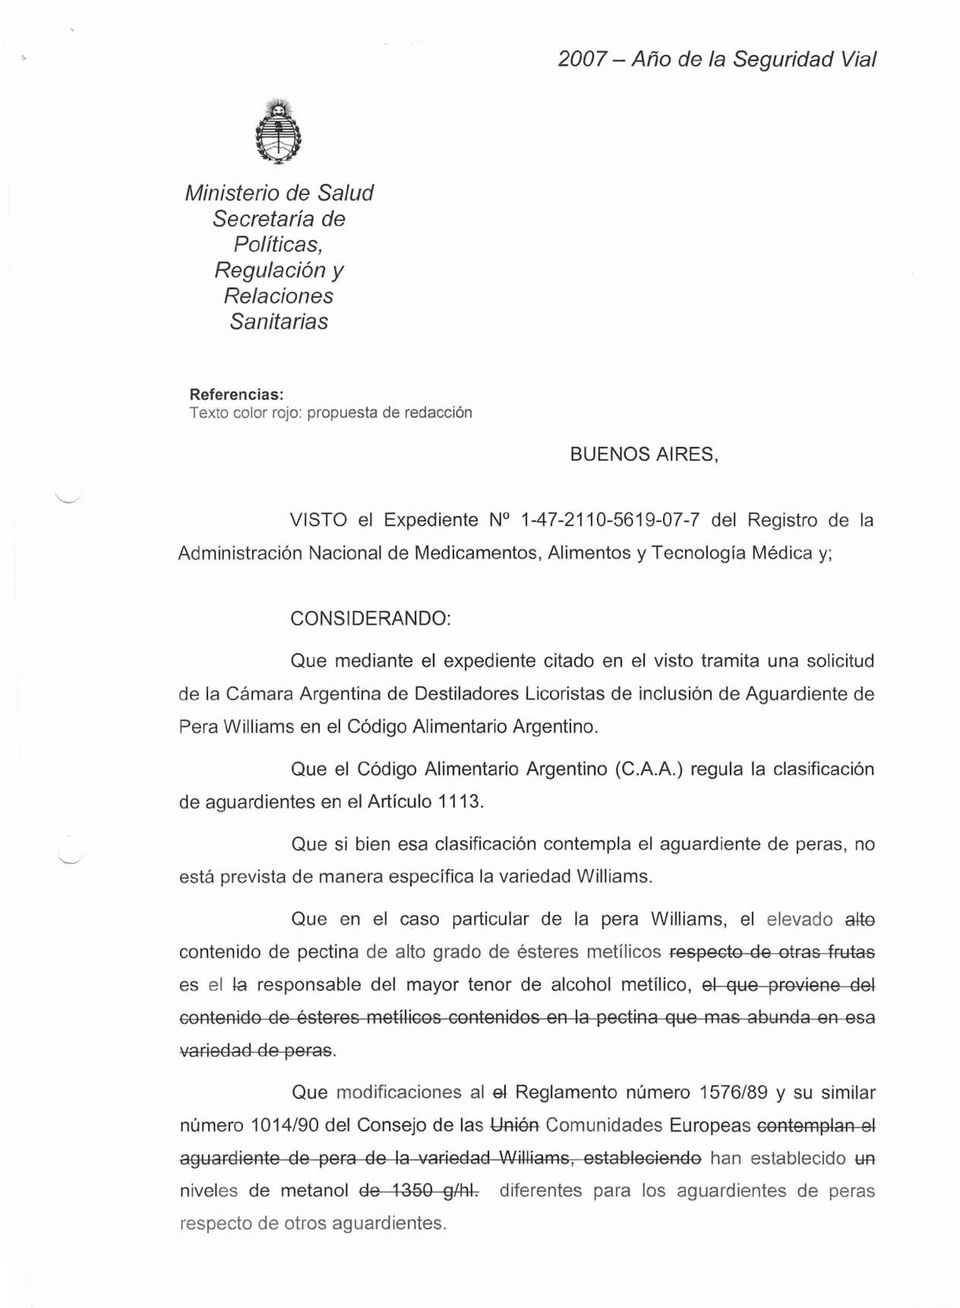 Alimentario Argentino. Que el Código Alimentario Argentino (C.A.A.) regula la clasificación de aguardientes en el Artículo 1113.